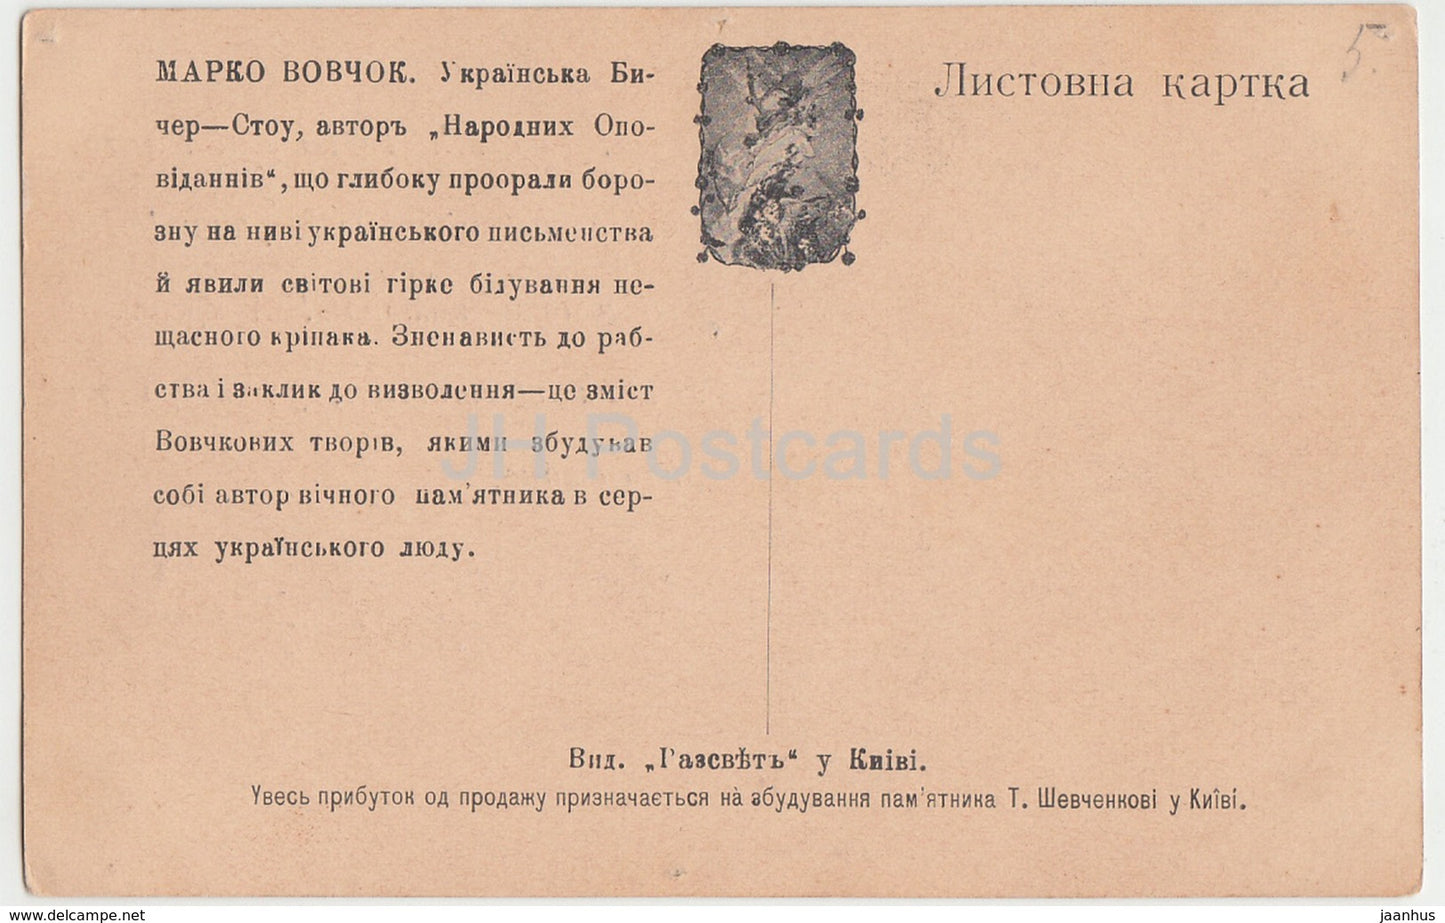 Berühmter ukrainischer Schriftsteller Marko Vovchok – Ukraine – alte Postkarte – Kaiserliches Russland – unbenutzt